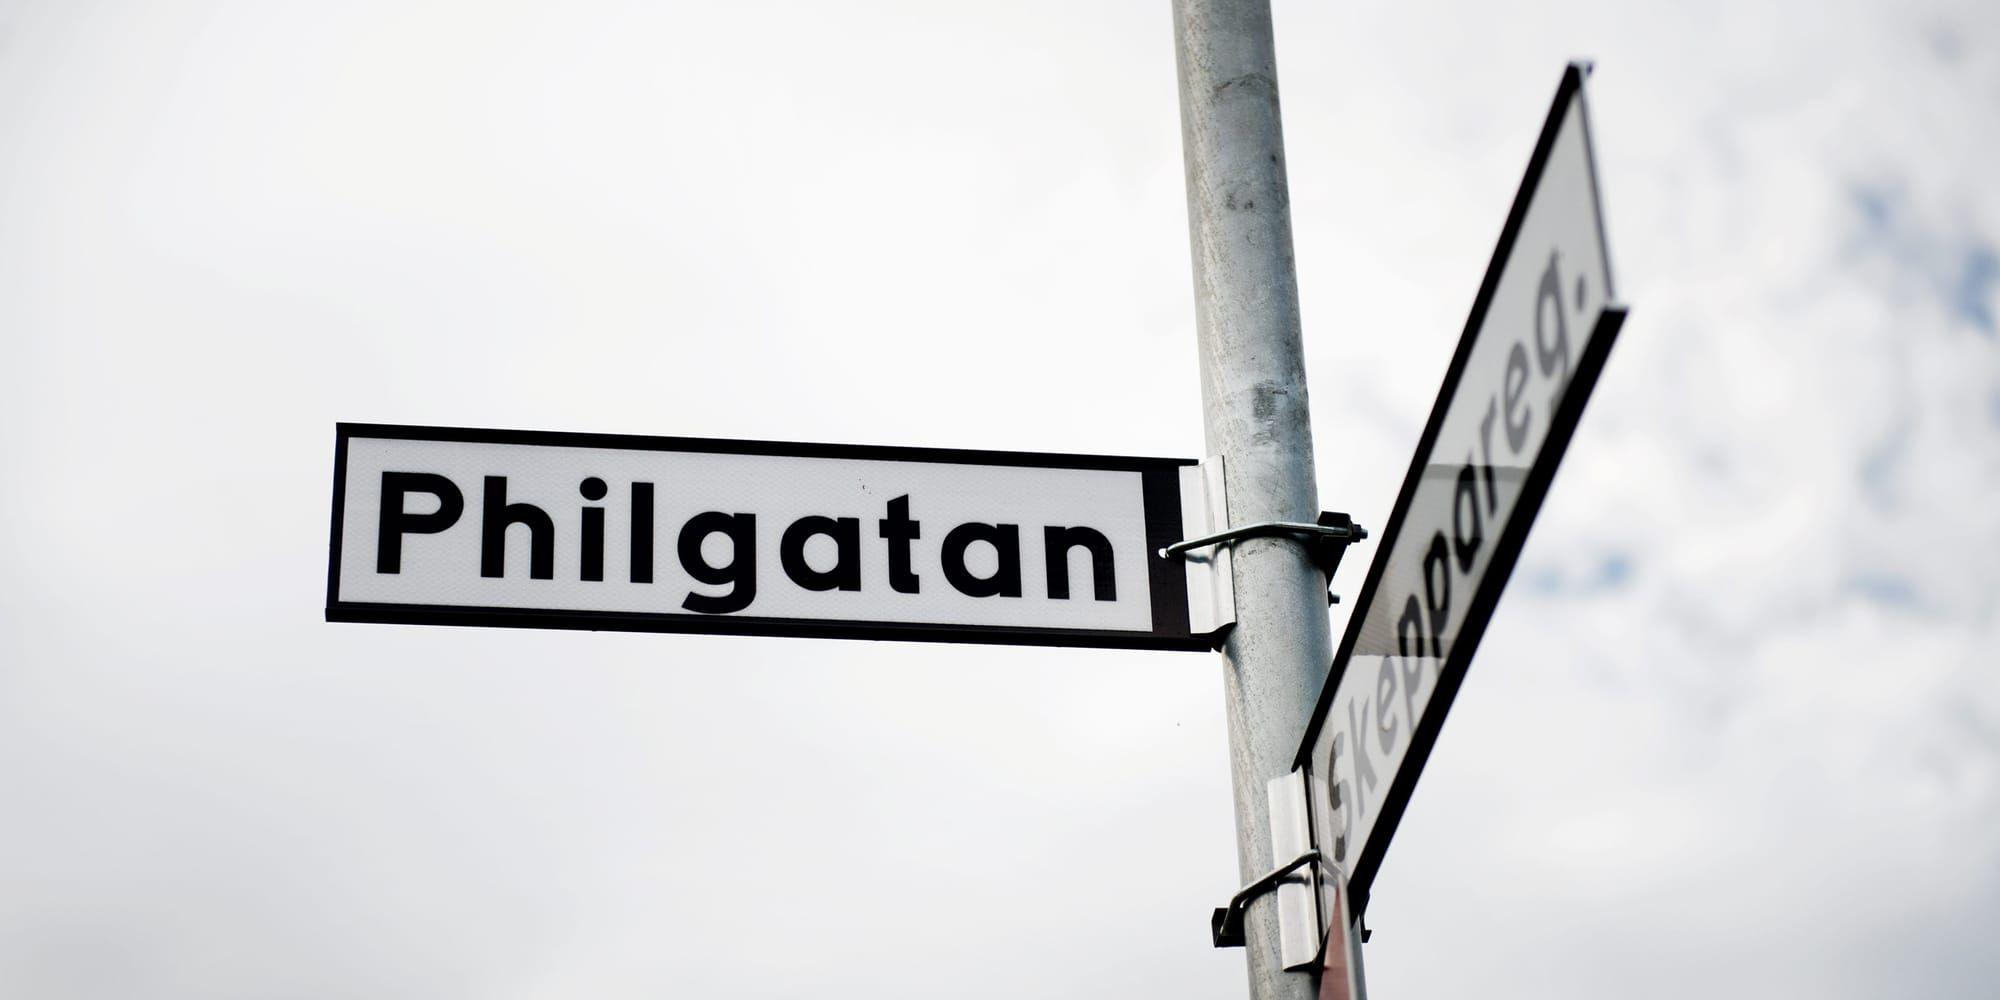 Ny stavning. Pihlgatan blev Philgatan när de nya skyltarna beställdes.